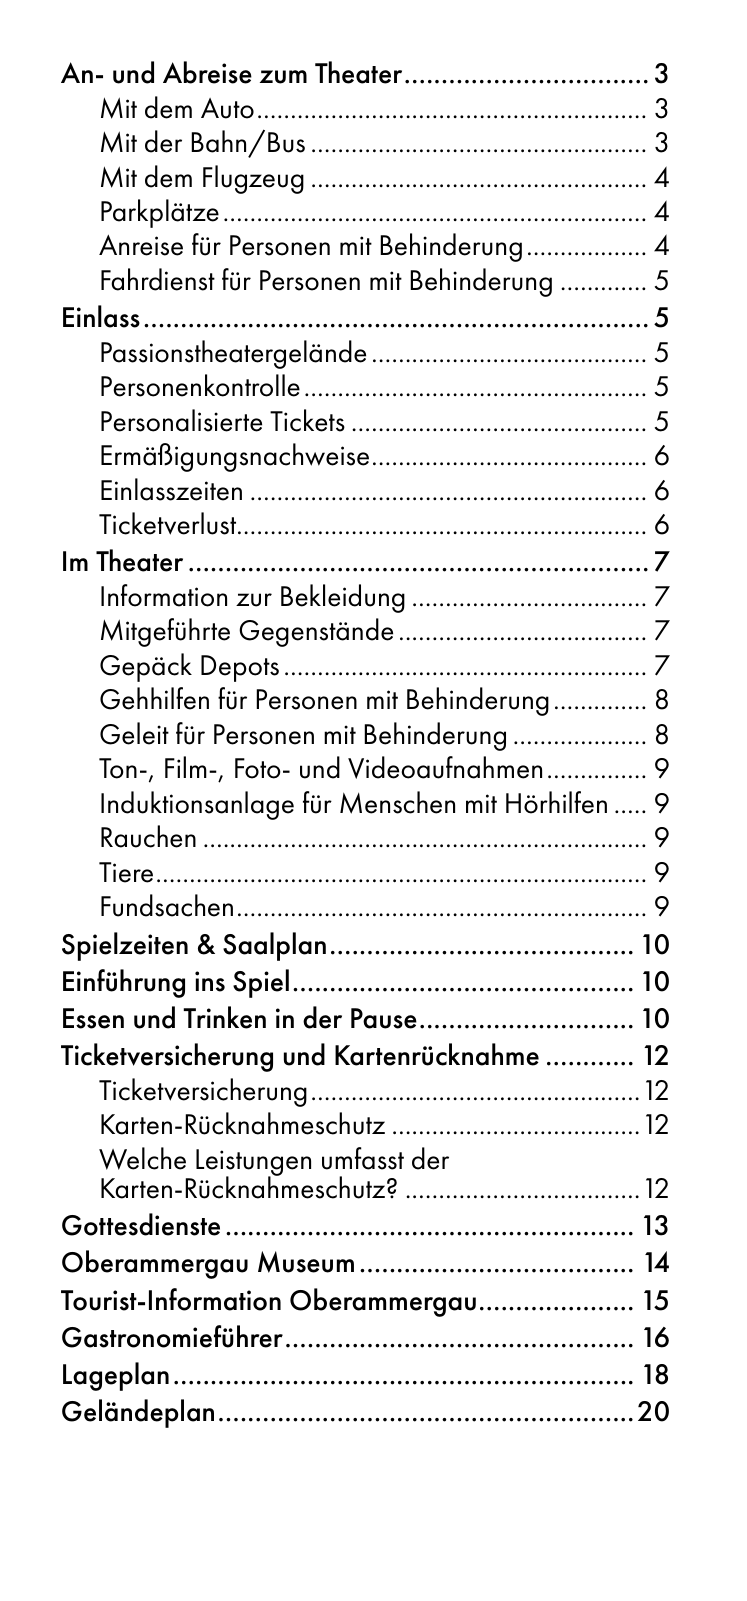 Vorschau Besucherinformation - Ticket only 24.08. Seite 2